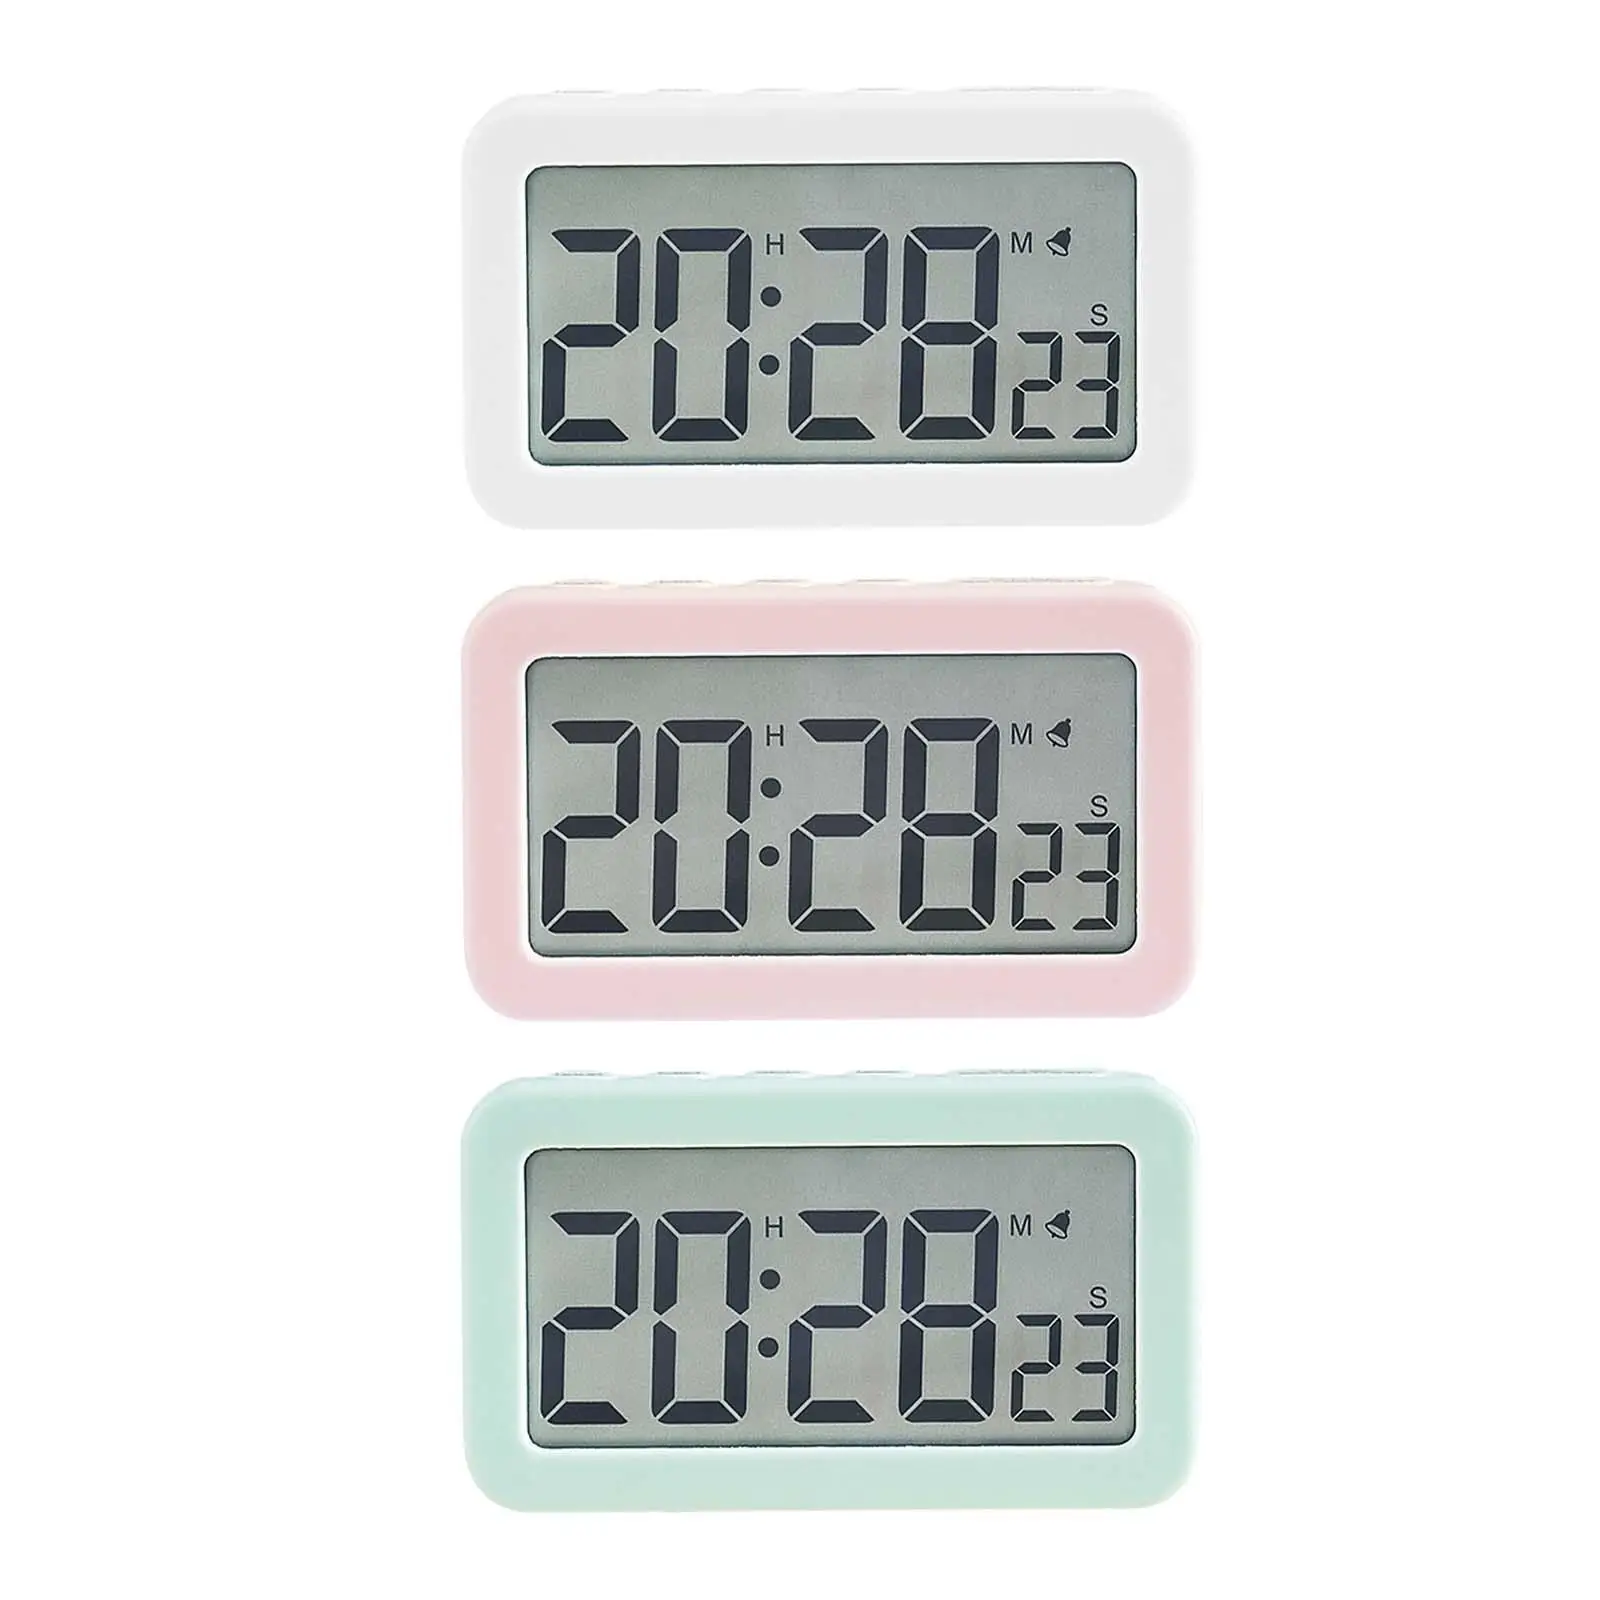 Digital Clock Large Display Easy Operation Desk Clocks Count up & Down Timer Bedside Clocks for Kids Adults Beside Bedroom